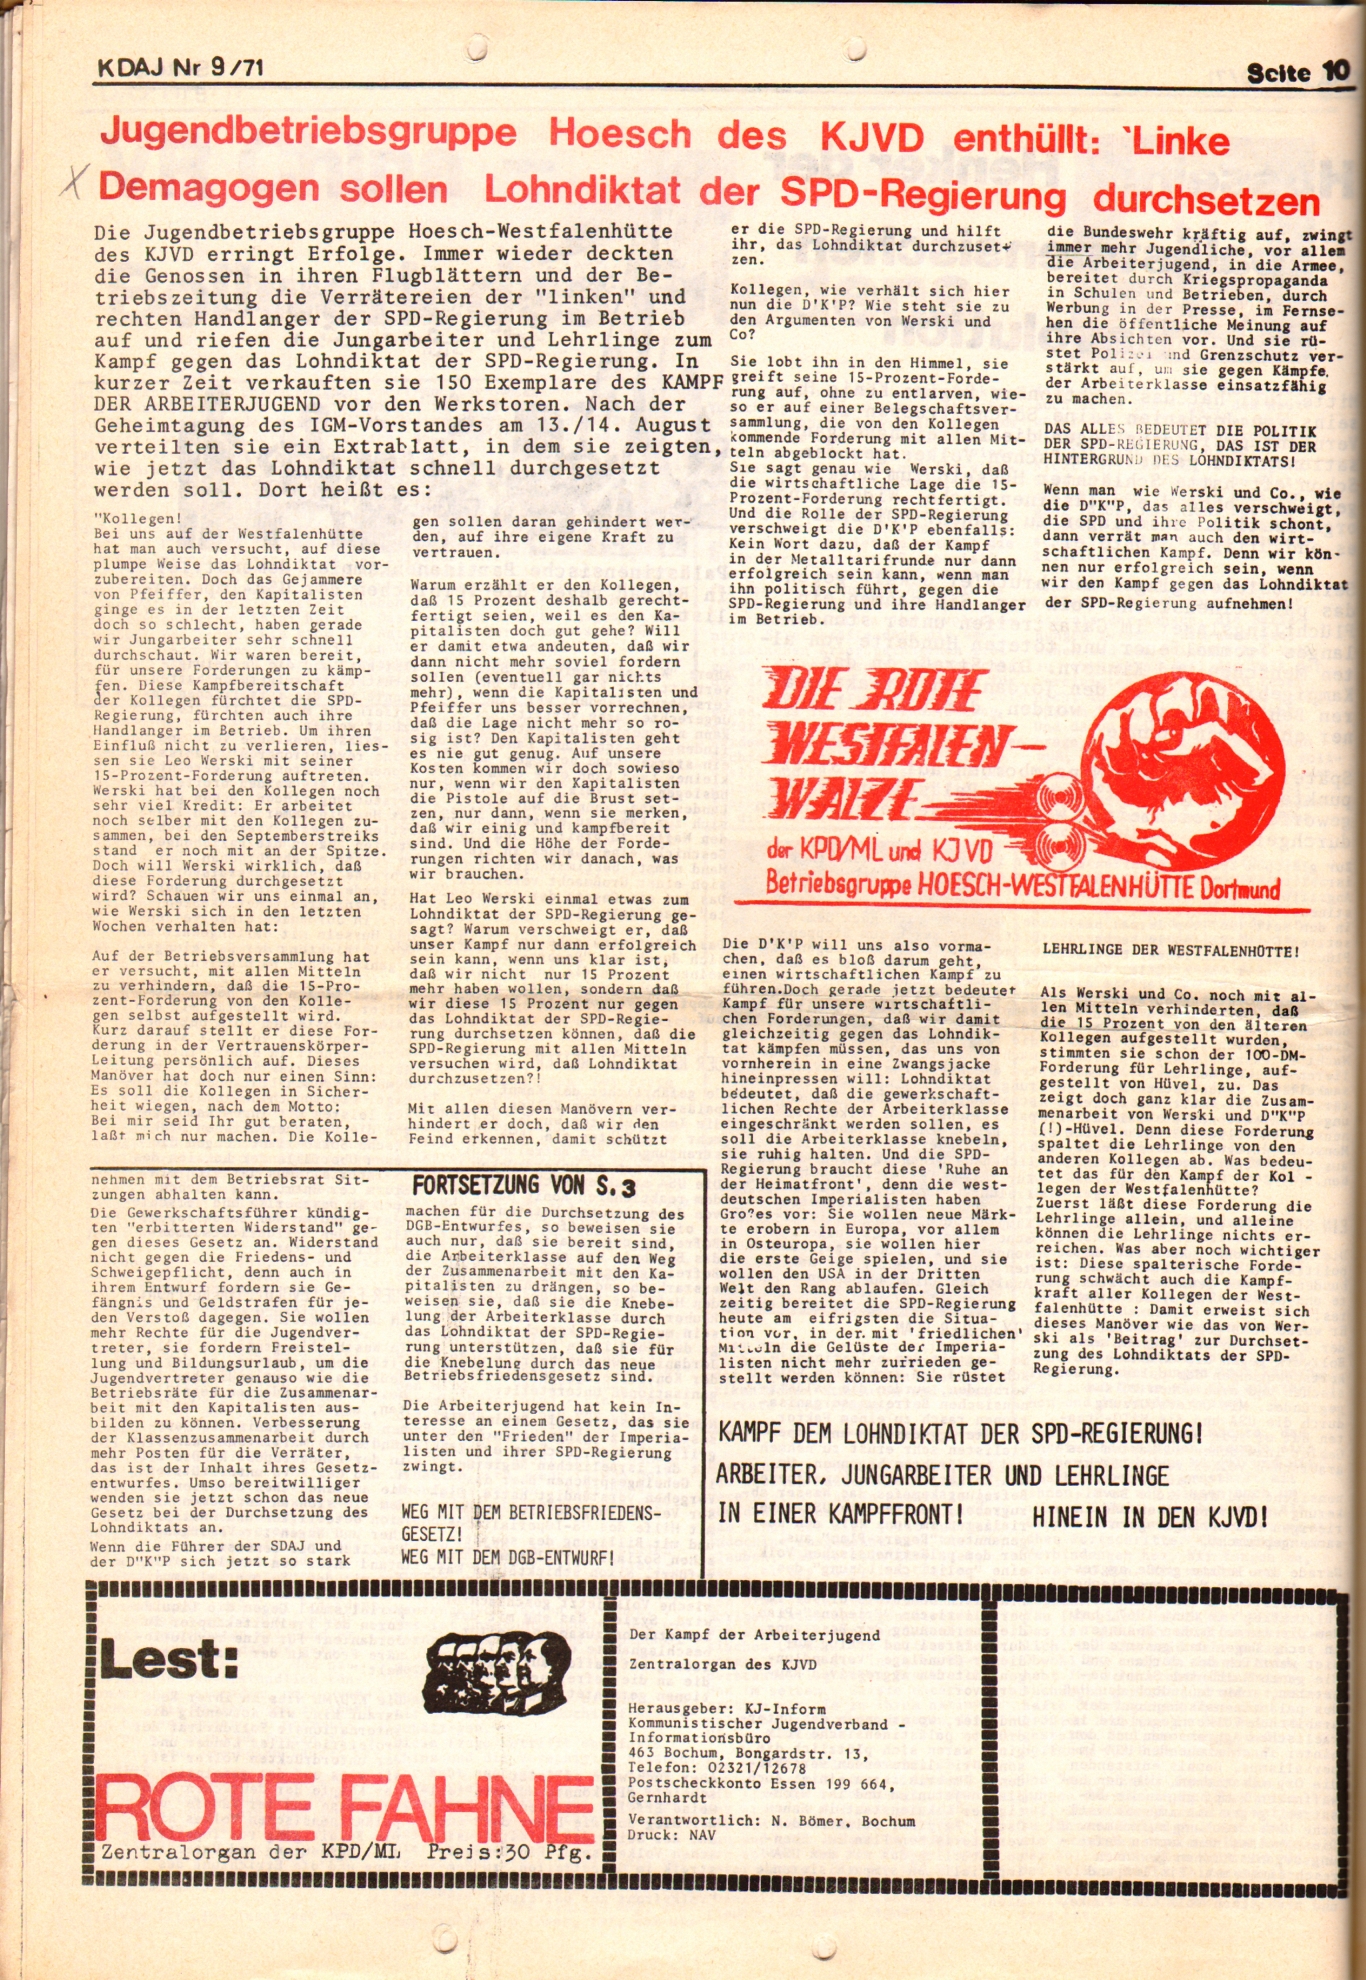 KDAJ, 2. Jg., September 1971, Nr. 9, Seite 10